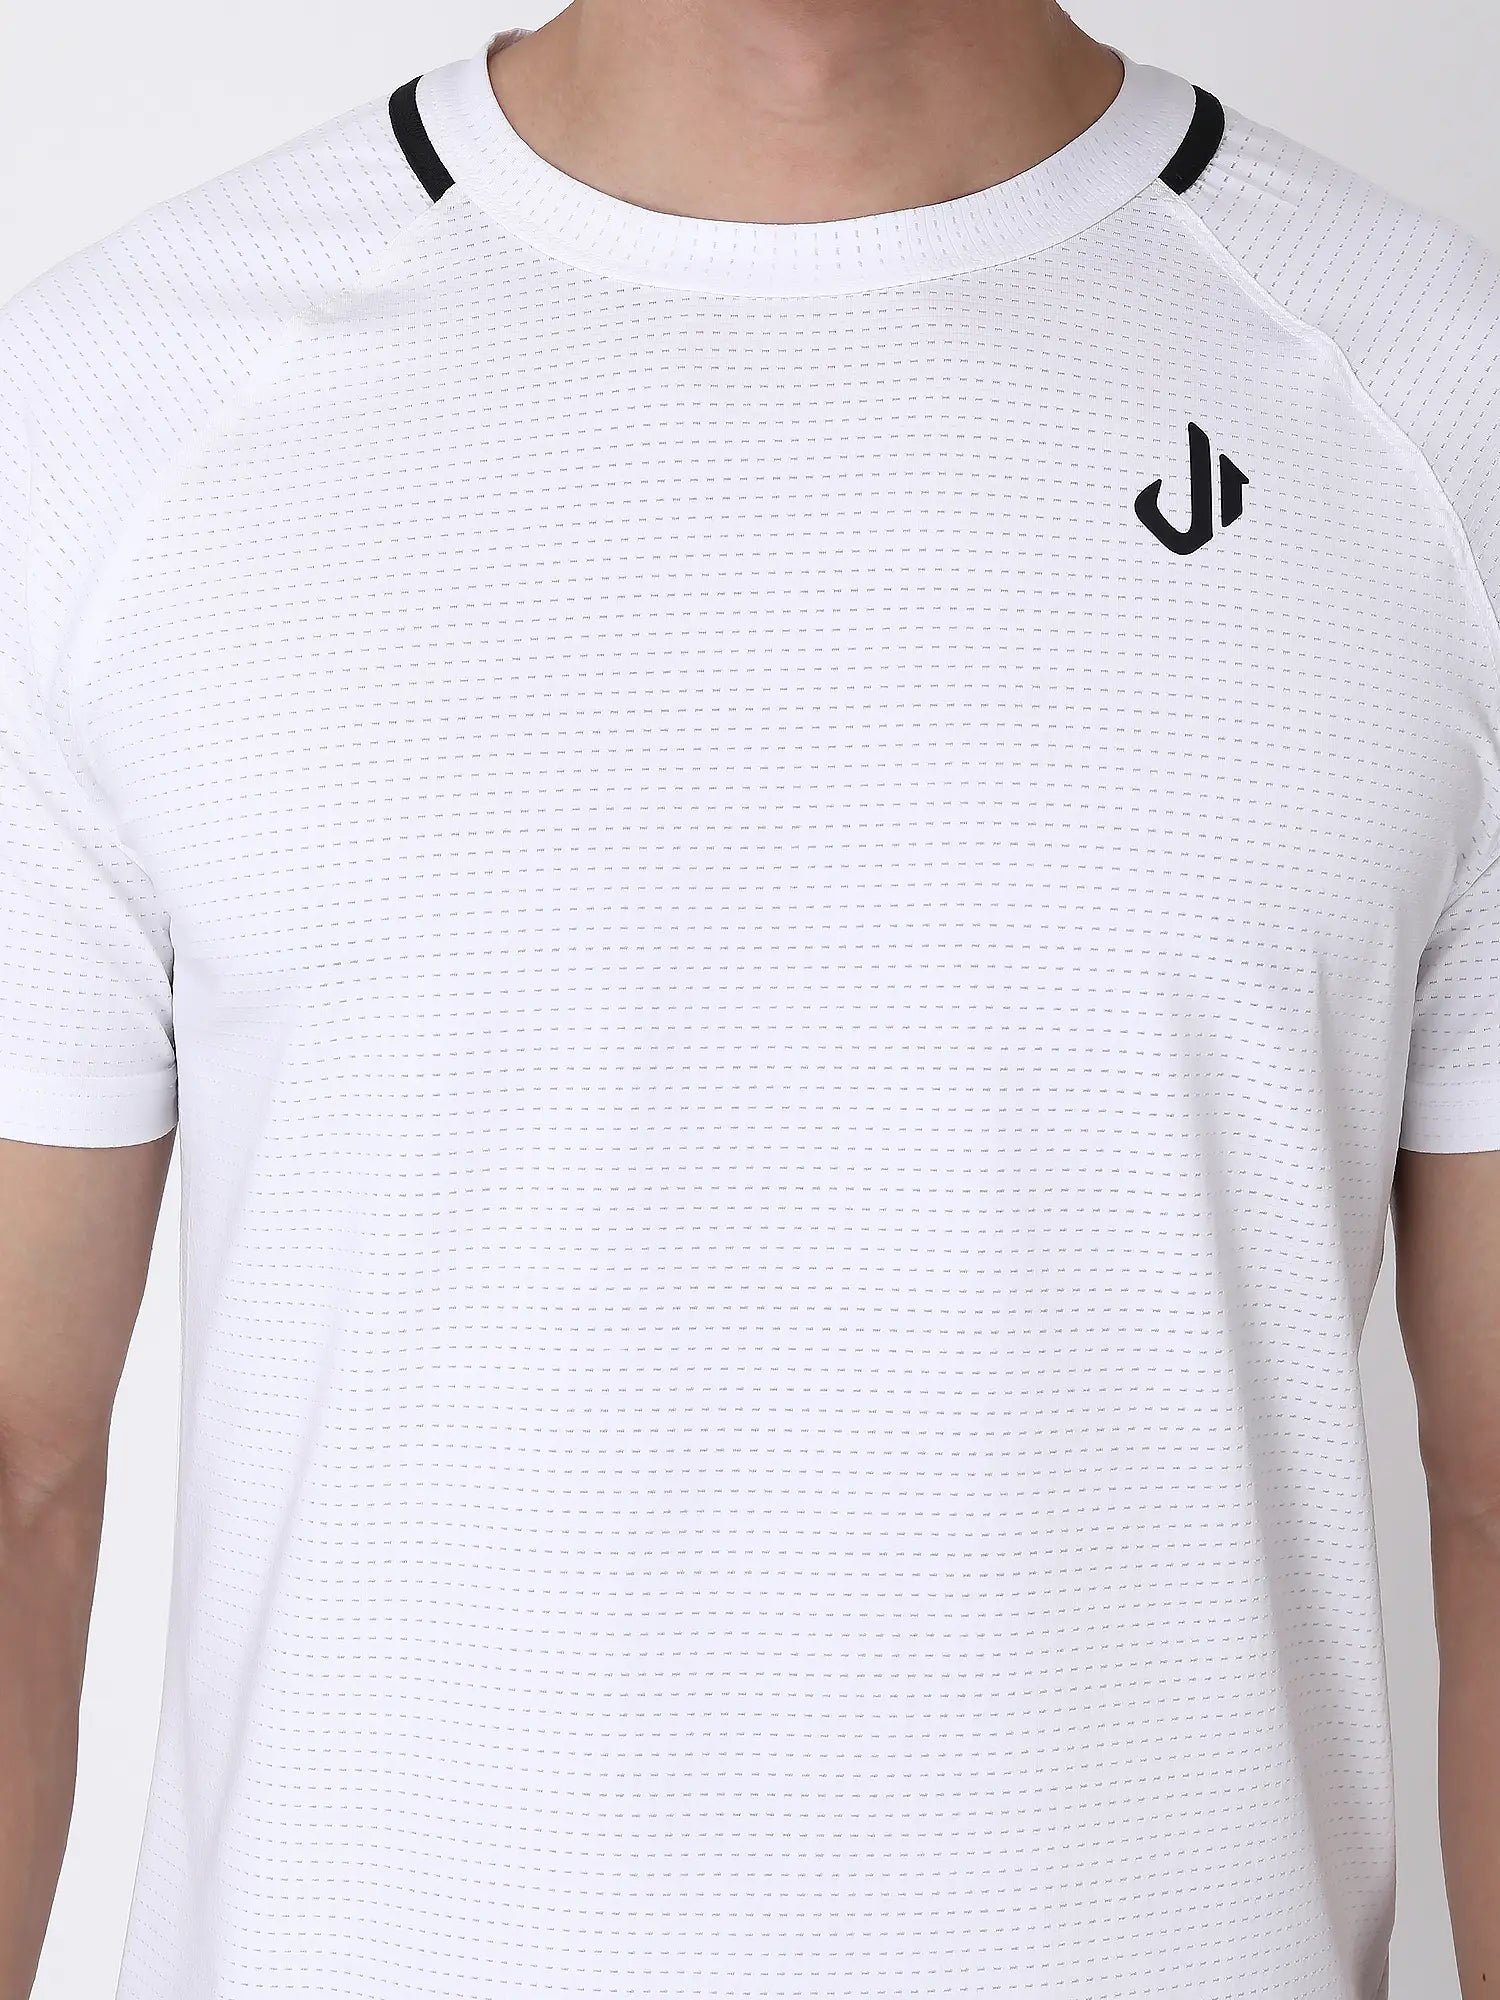 Jeffa Running T-shirt in White